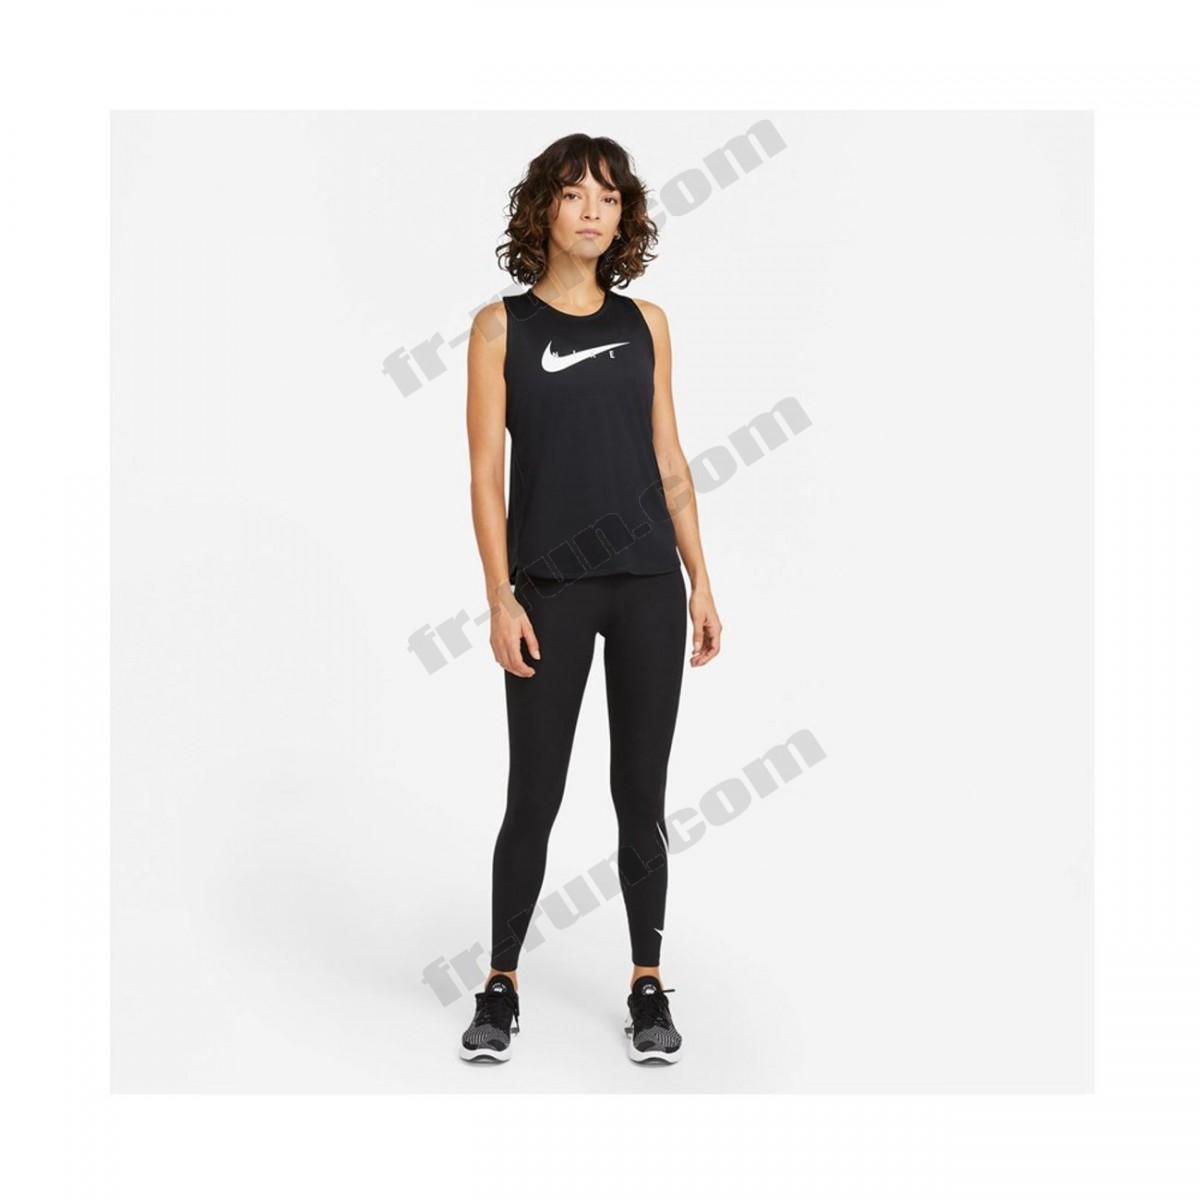 Nike/running femme NIKE Nike Wmns Swoosh Run Top ◇◇◇ Pas Cher Du Tout - -4